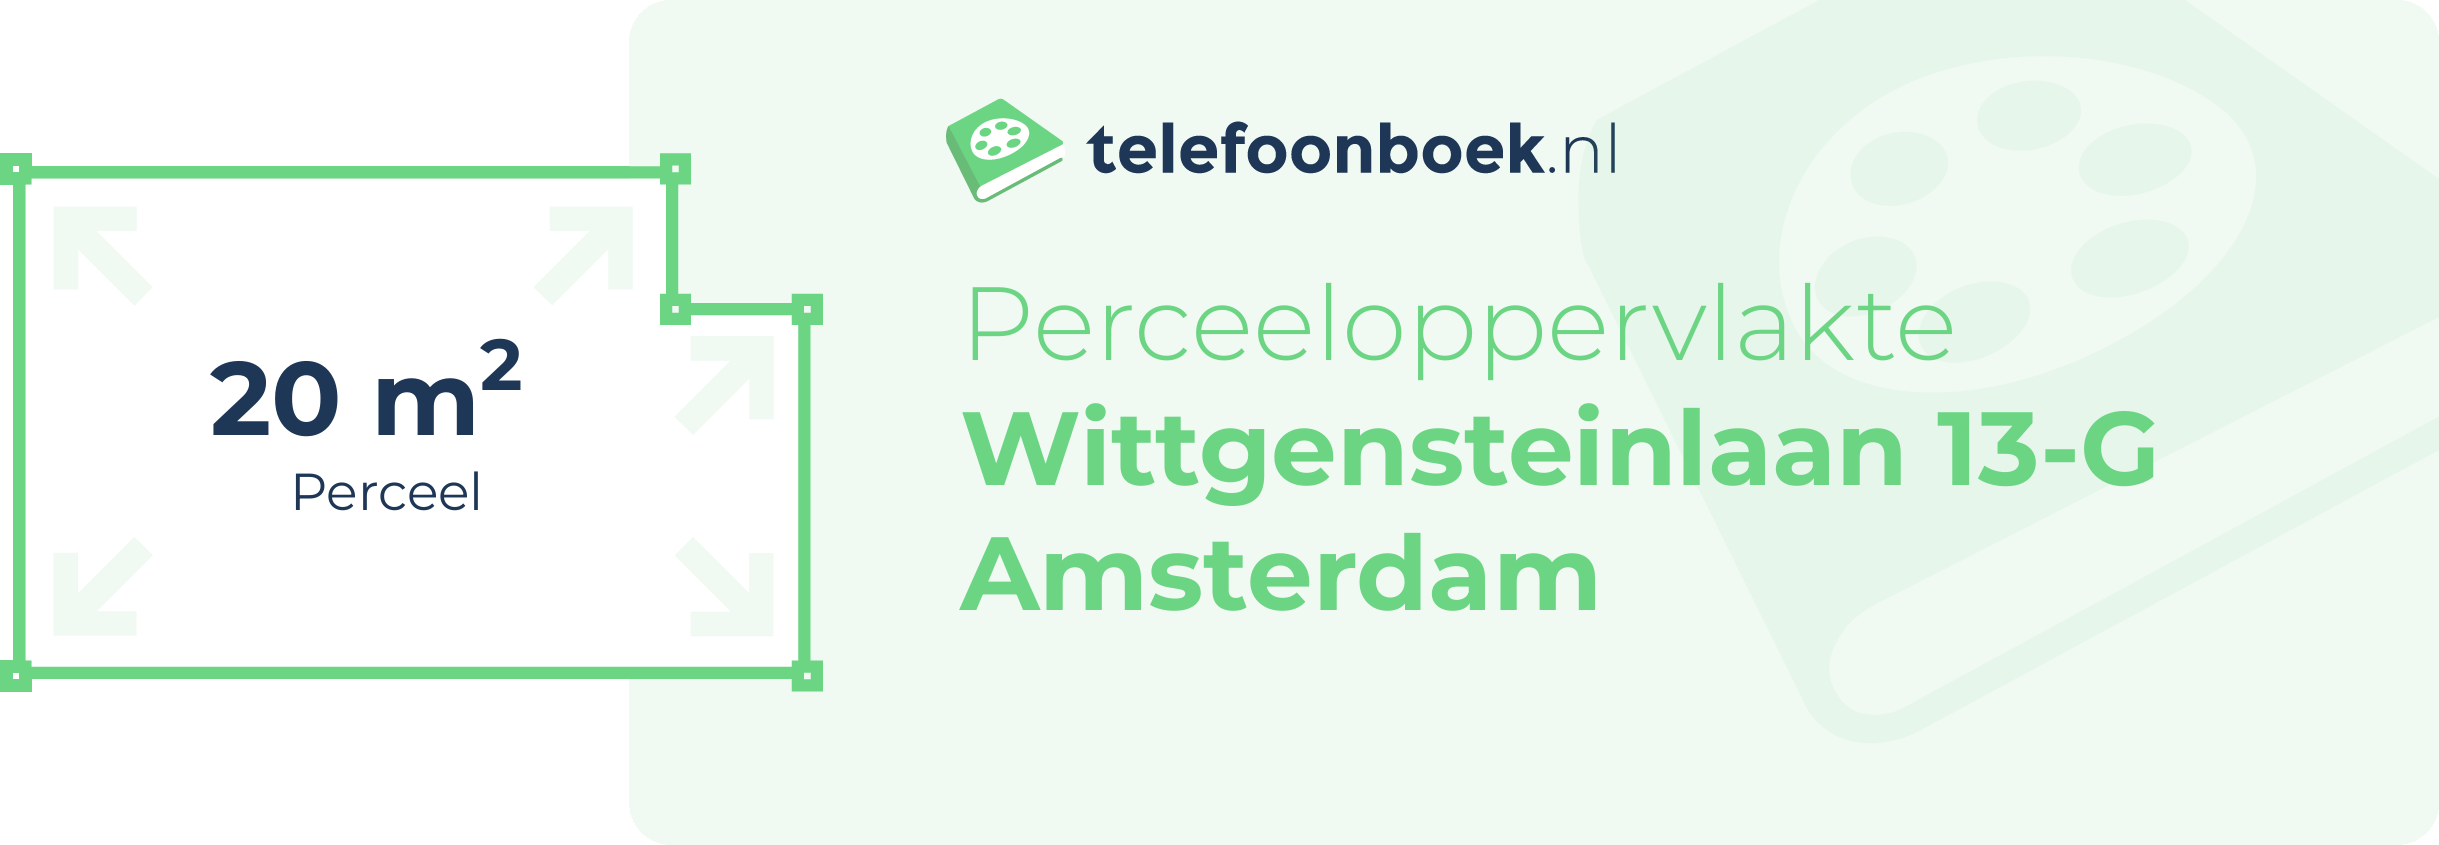 Perceeloppervlakte Wittgensteinlaan 13-G Amsterdam